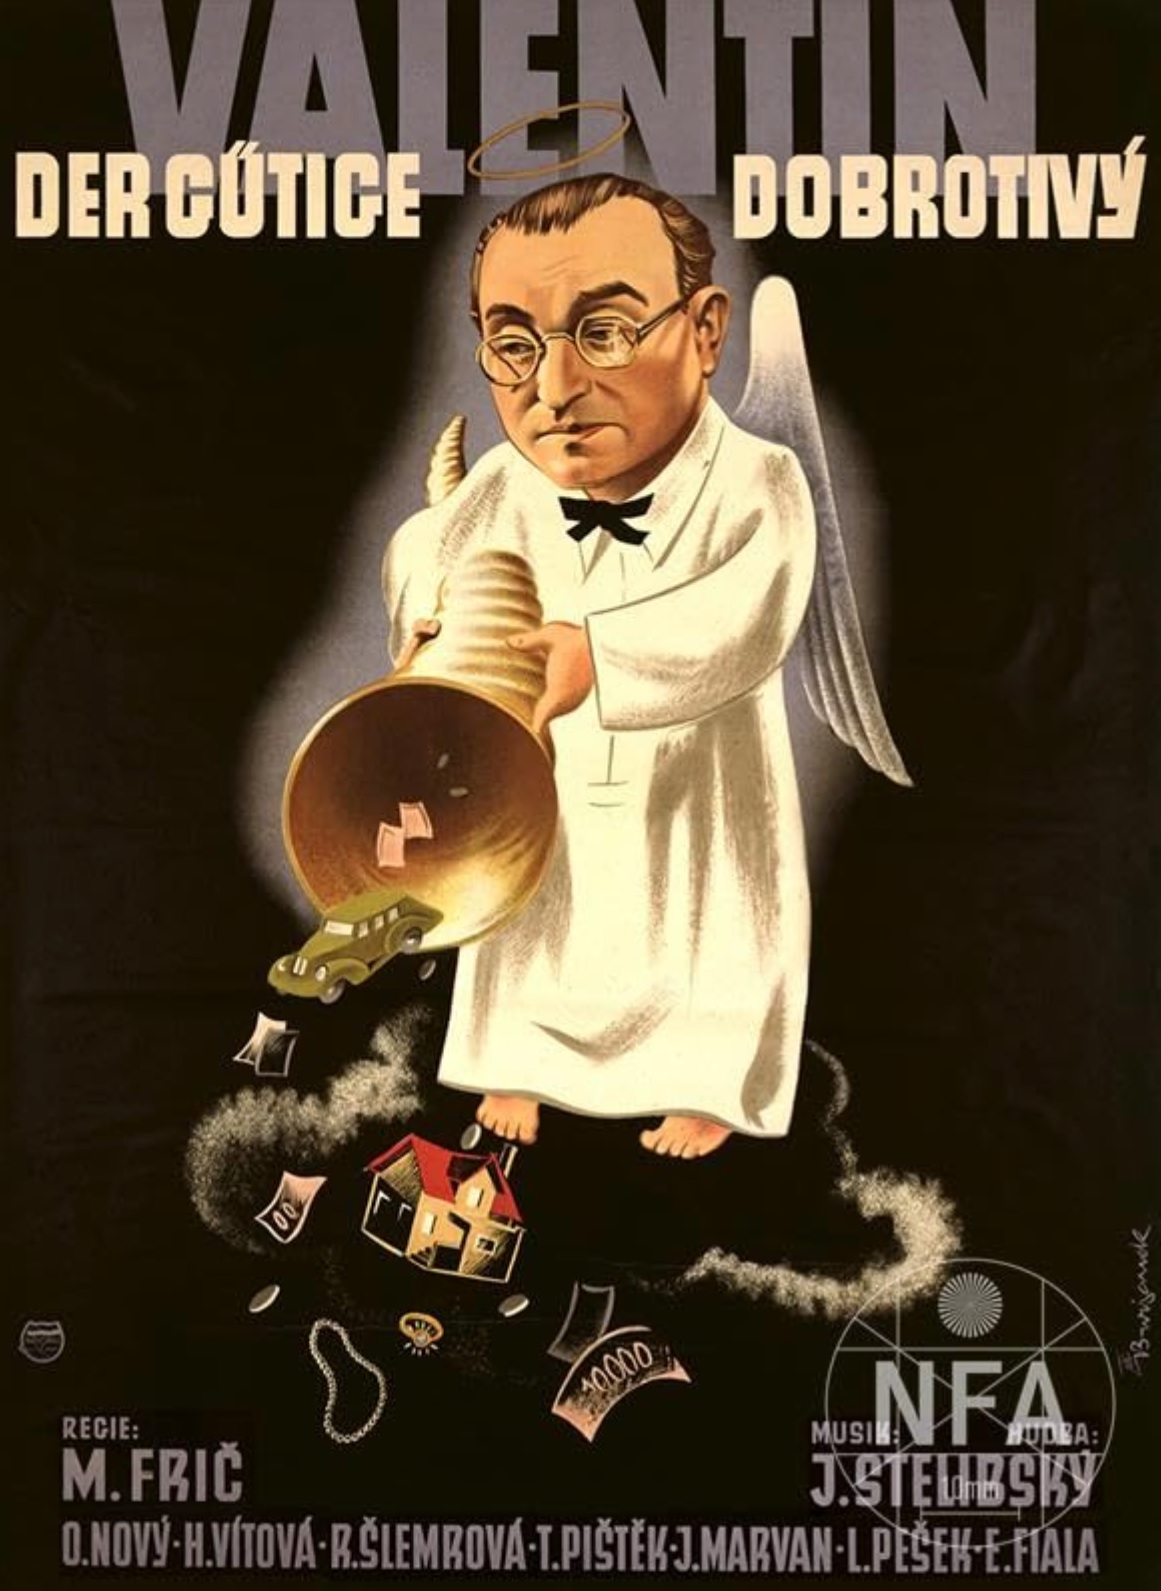 Plakát pro film “Valentin Dobrotivý”